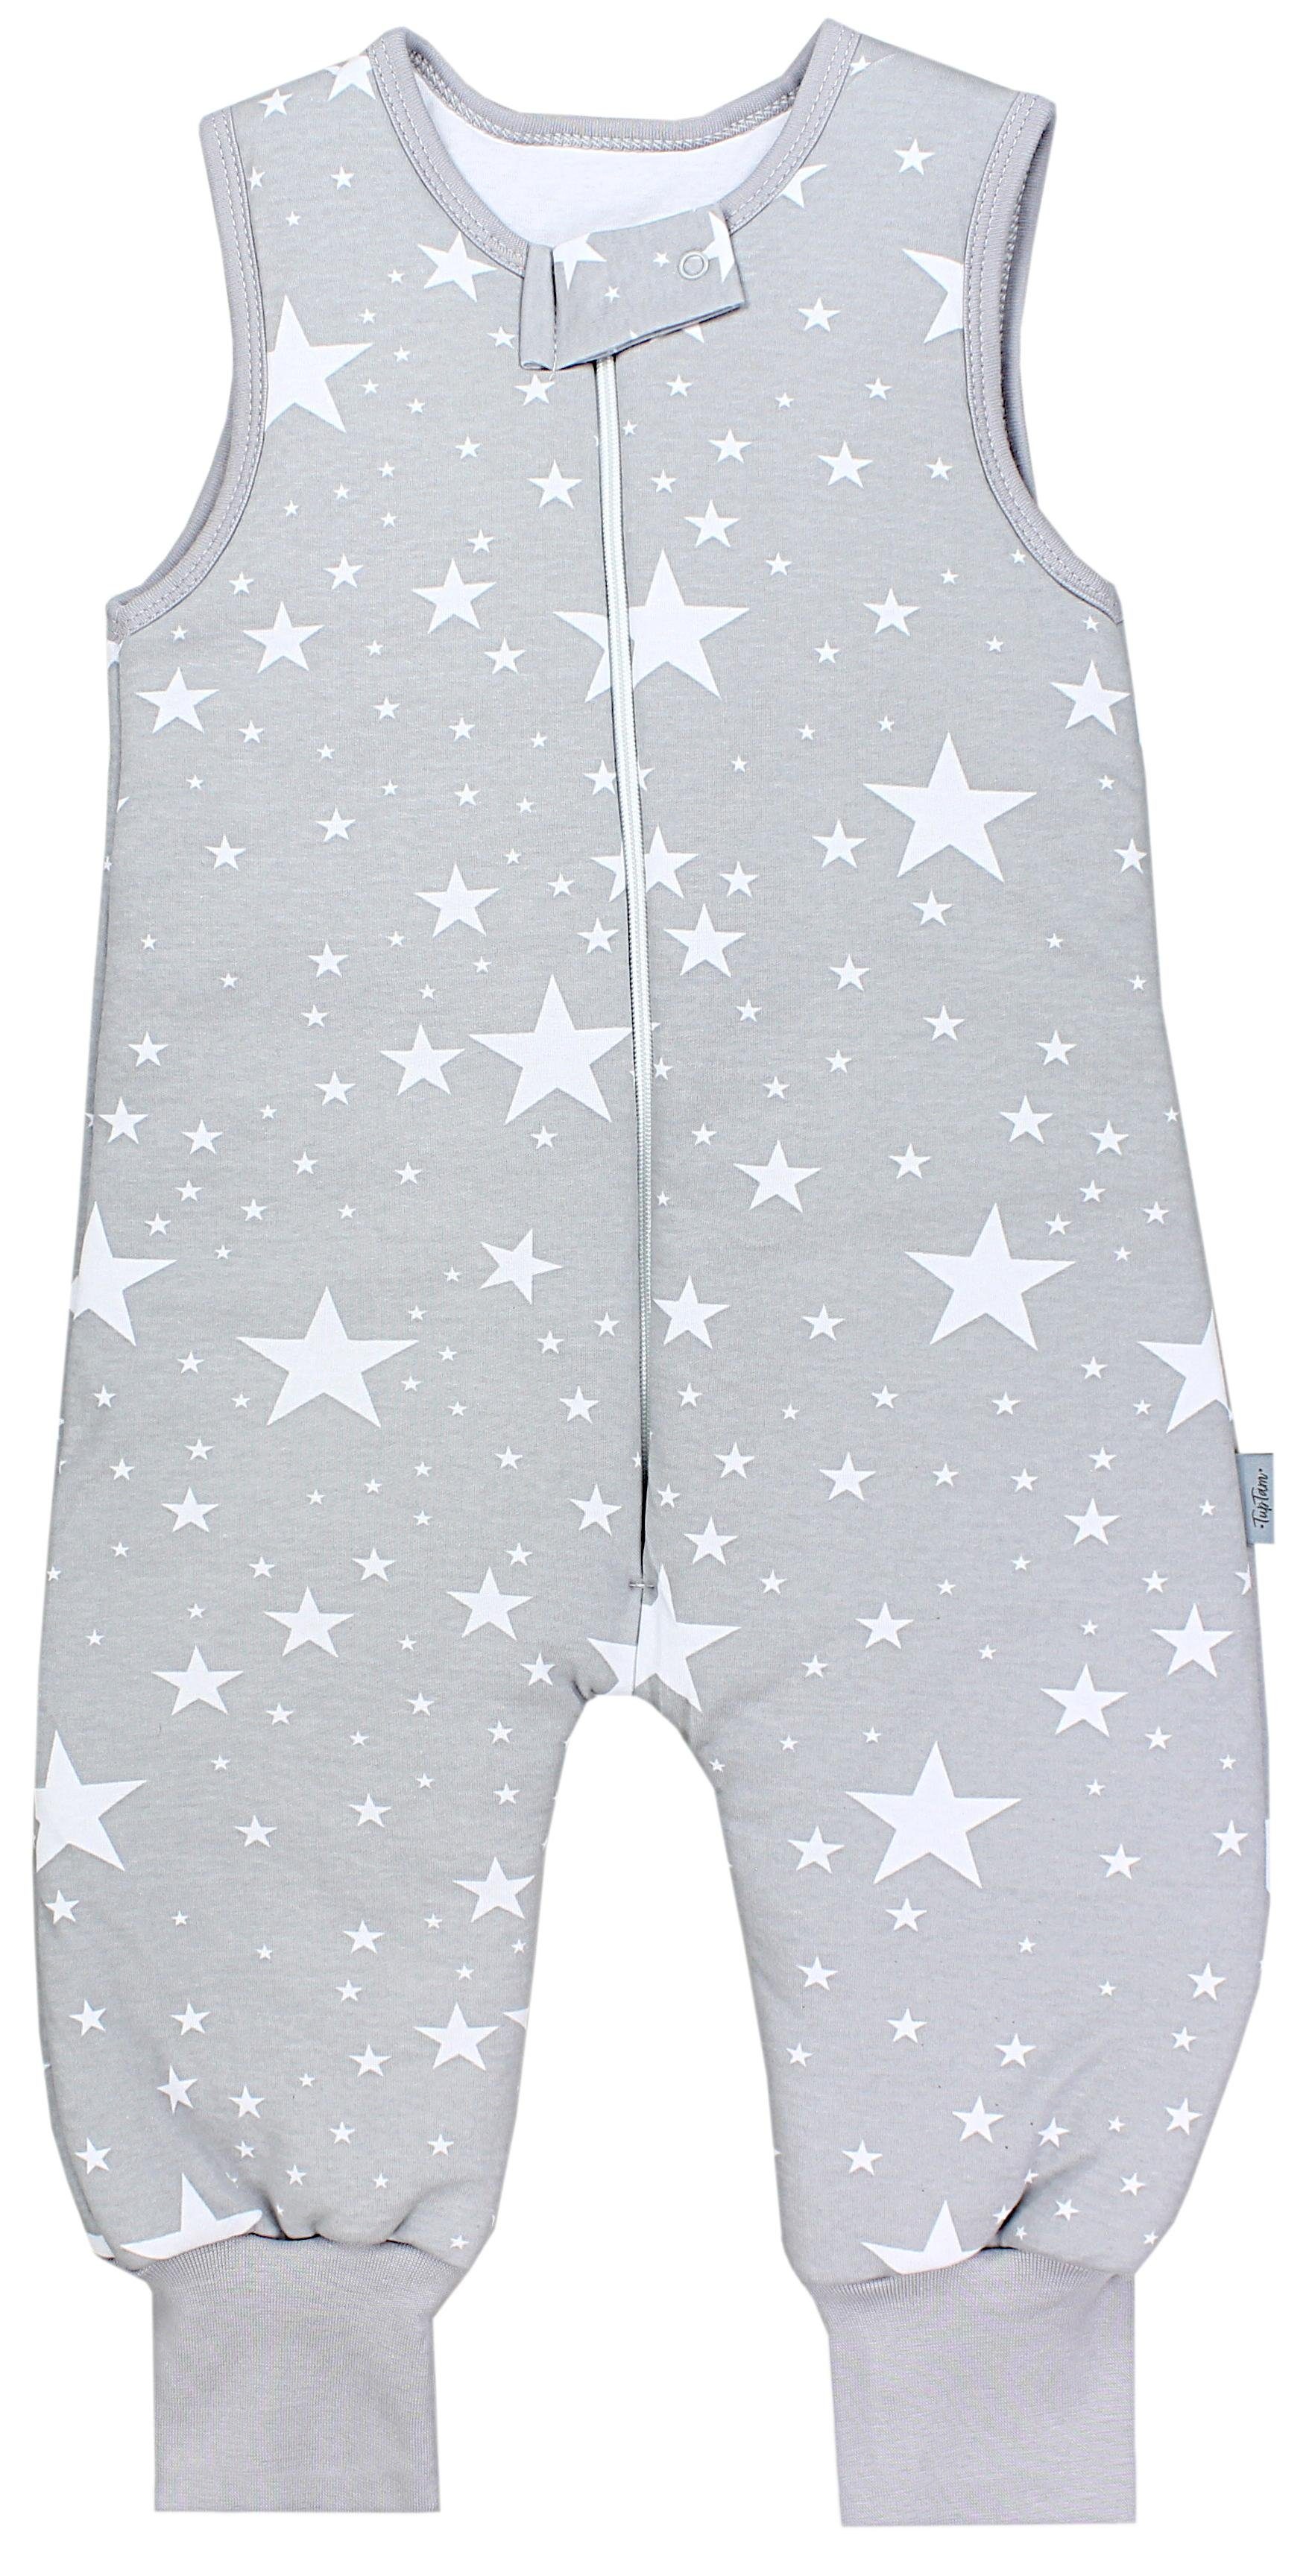 TupTam Babyschlafsack Winter Schlafsack mit Beinen OEKO-TEX zertifiziert 2,5 TOG Unisex Weiße Sterne / Grau | Schlafsäcke